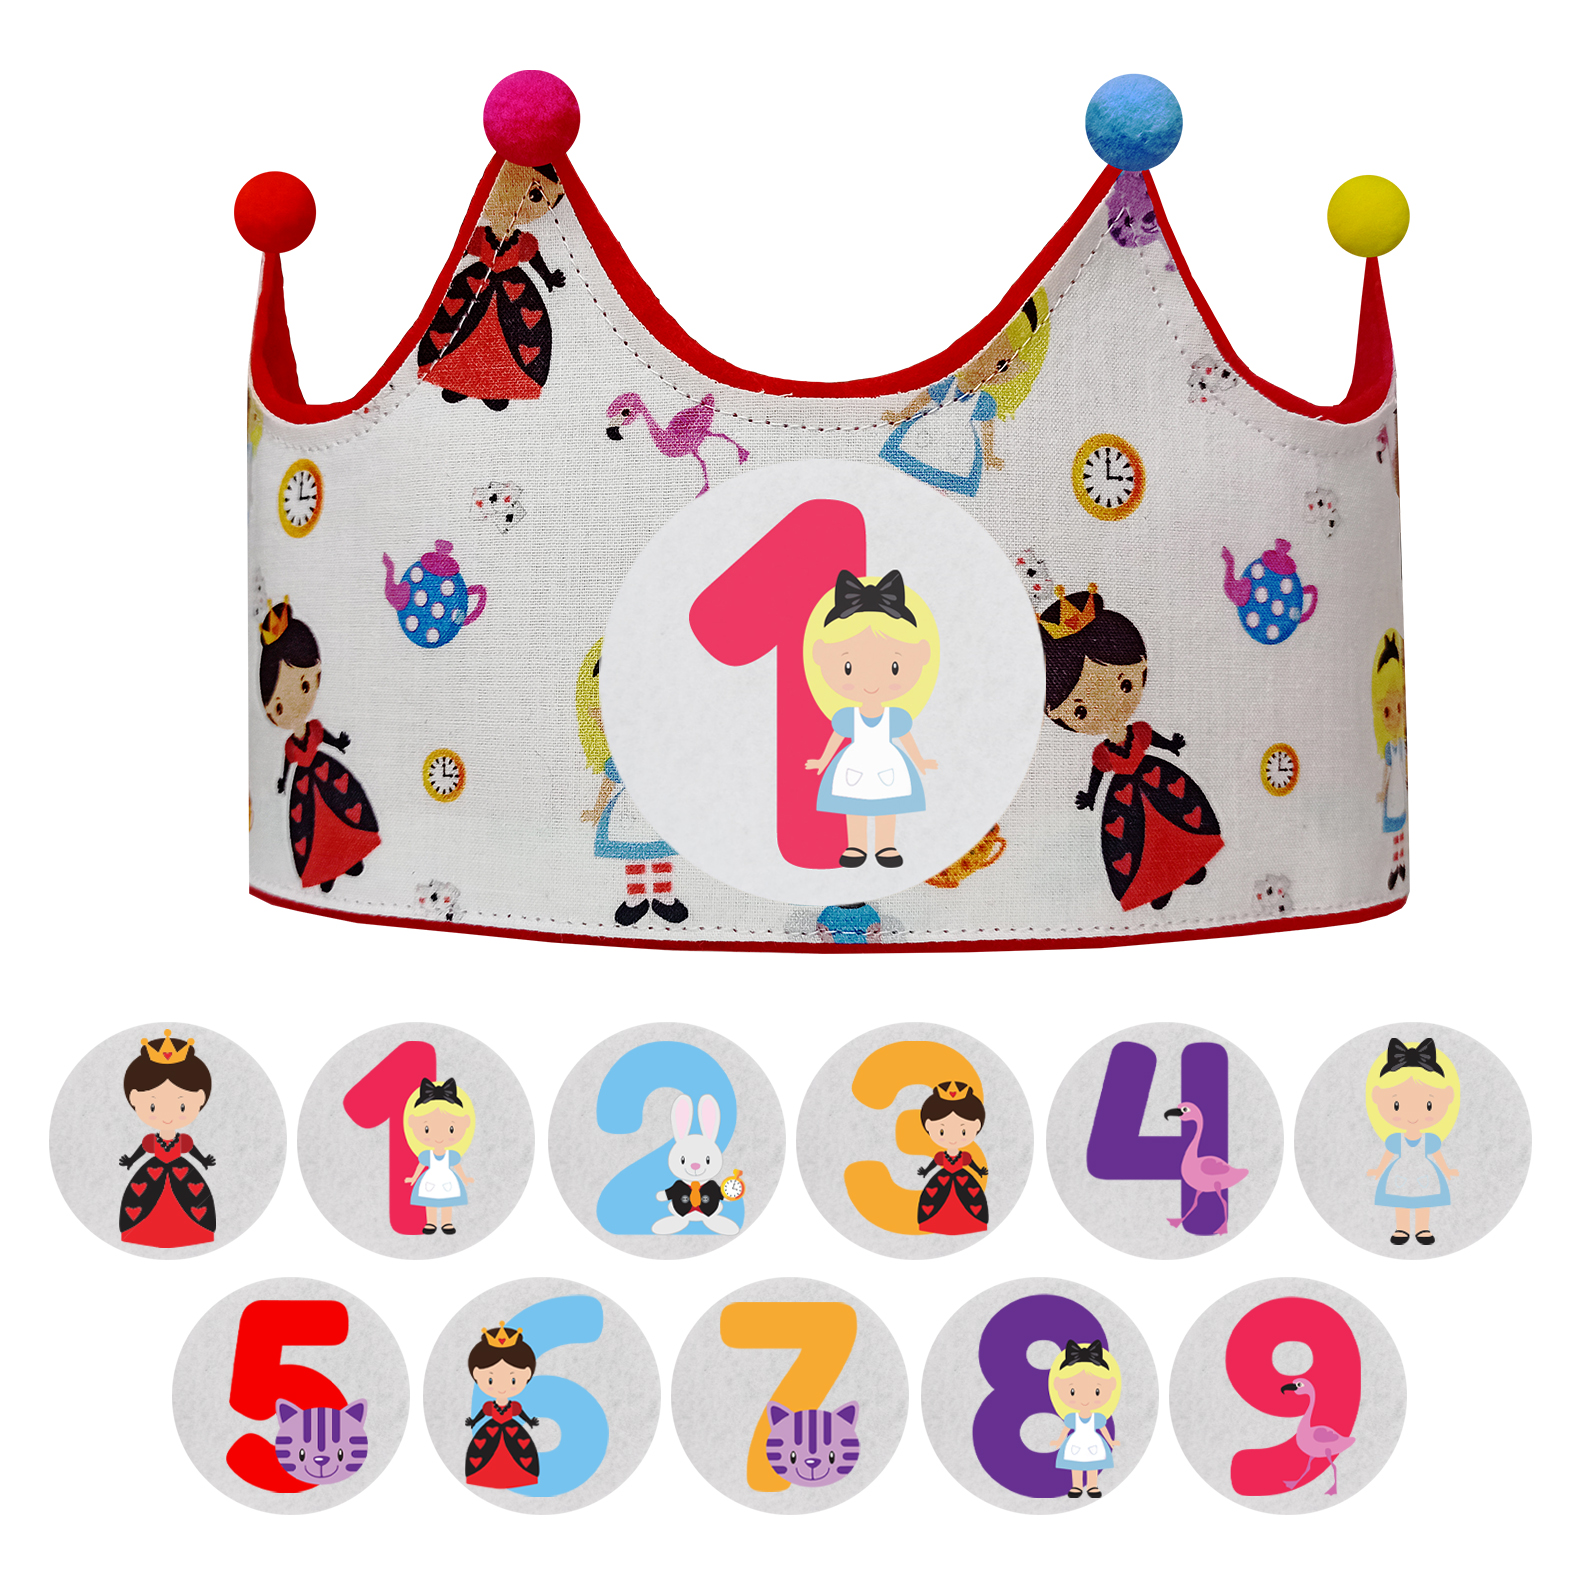 Corona de cumpleaños fieltro con números intercambiables